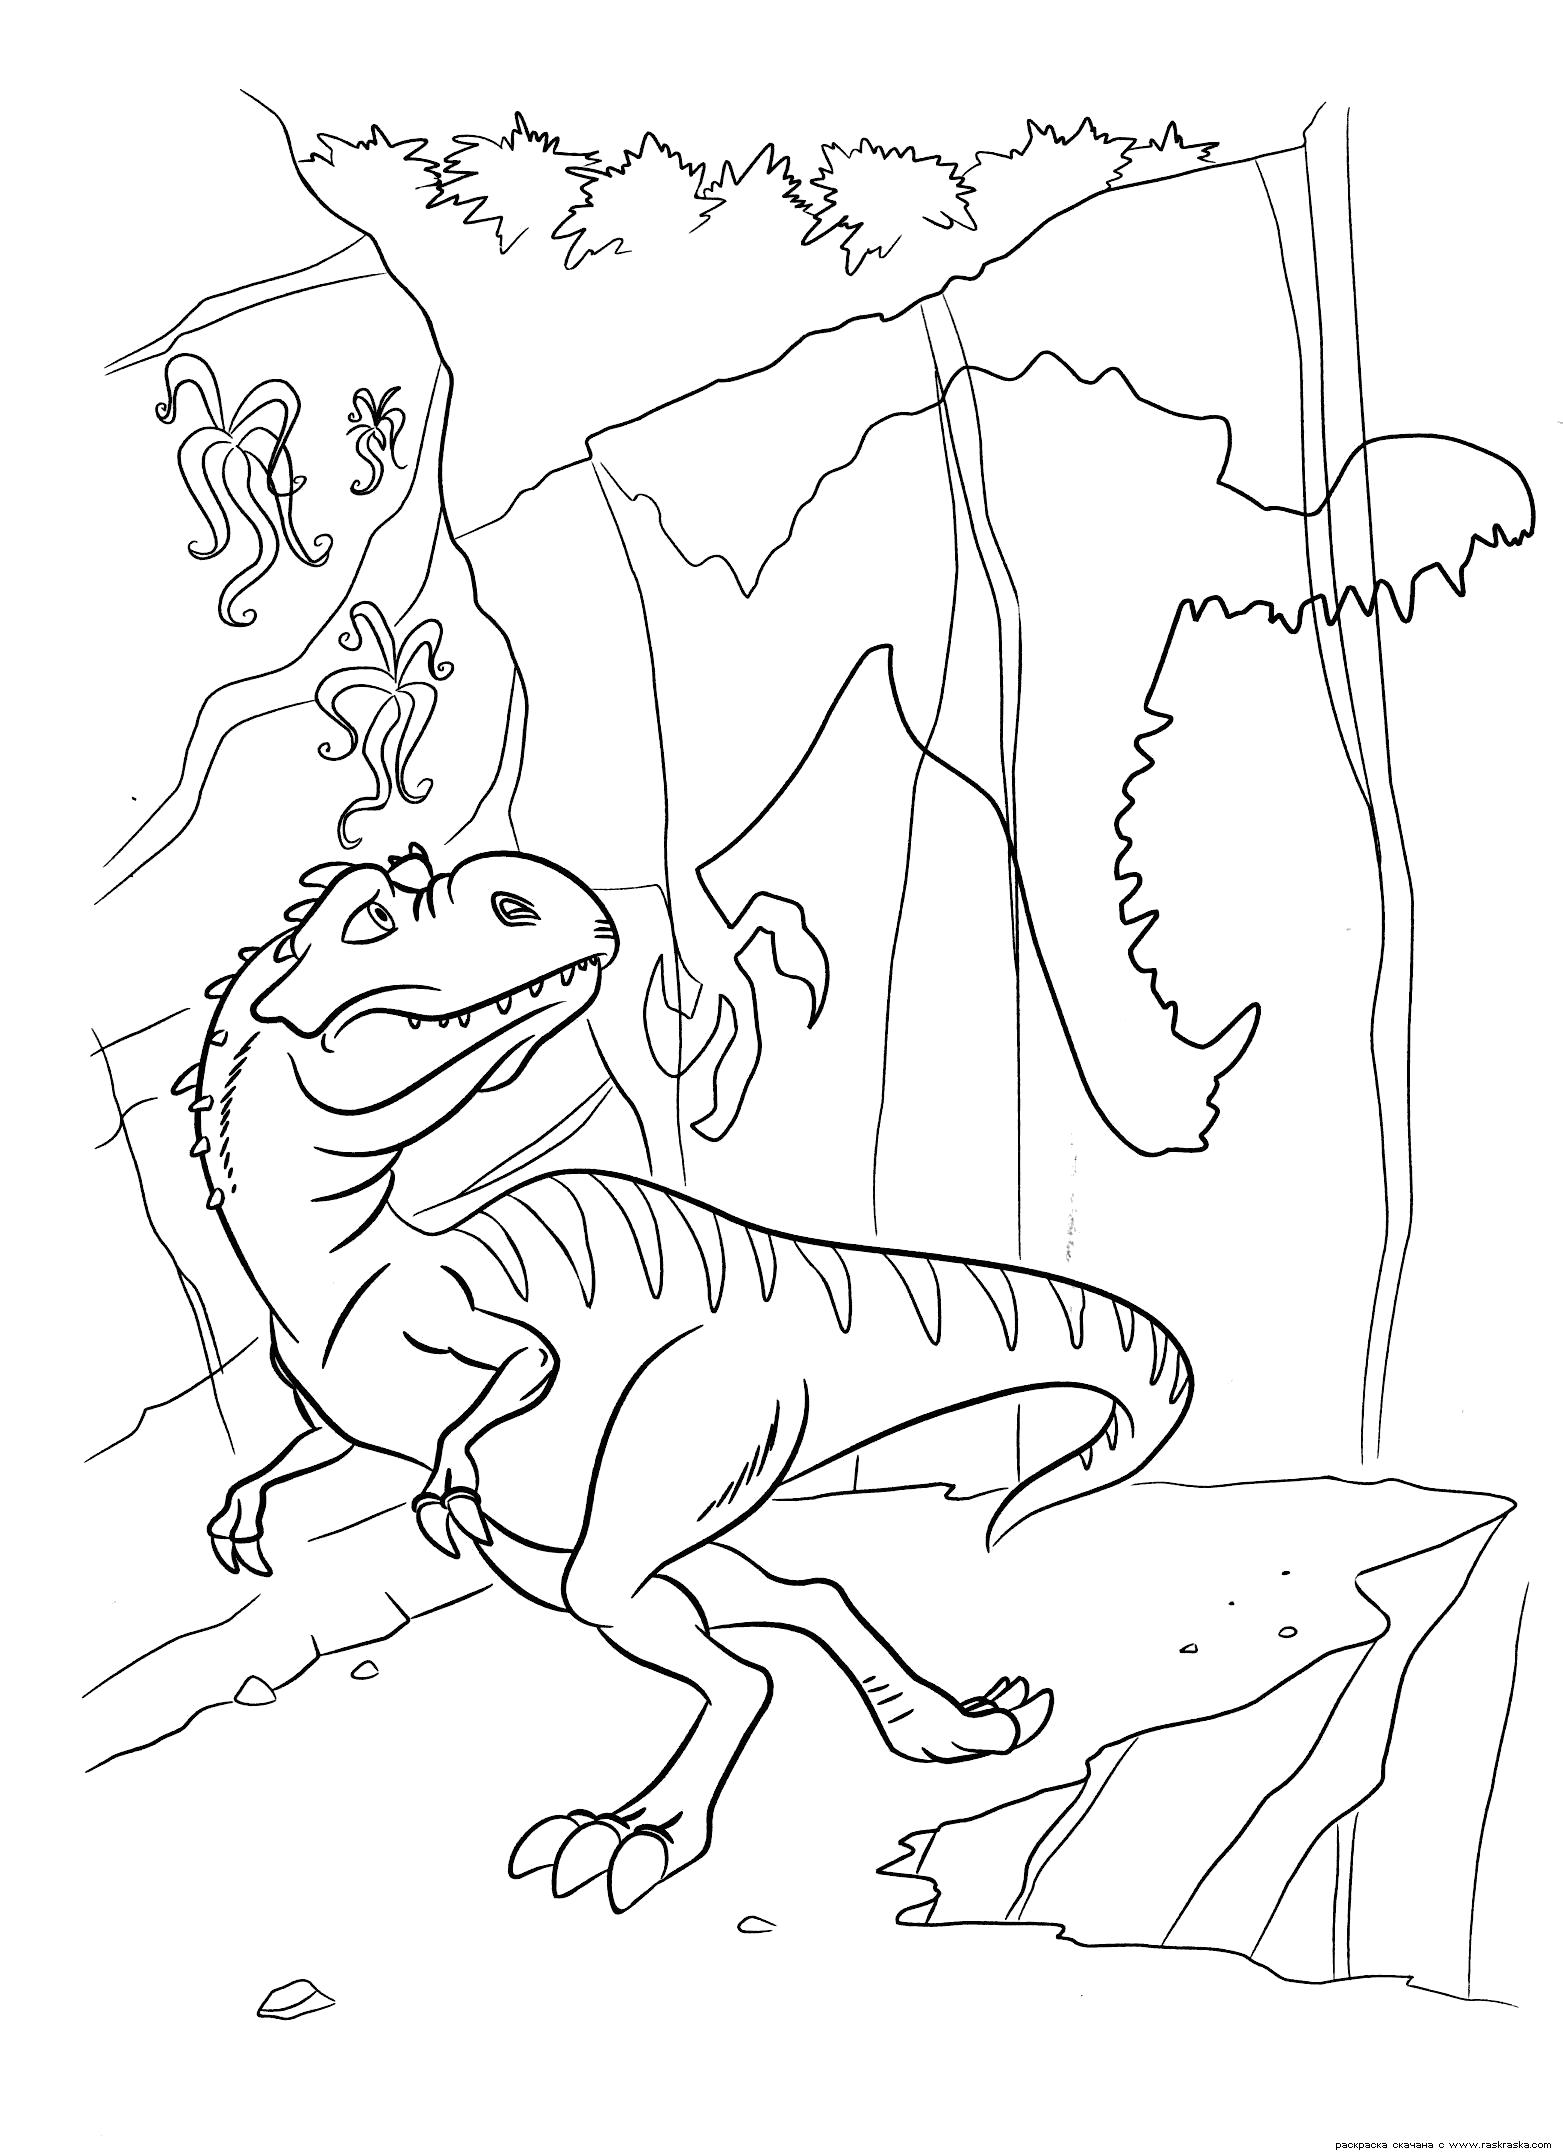 Раскраска  Тень Руди.  Мама динозавриков боится за своих малышей.  динозавра из мультфильма Ледниковый период 3. Скачать динозавр.  Распечатать динозавр